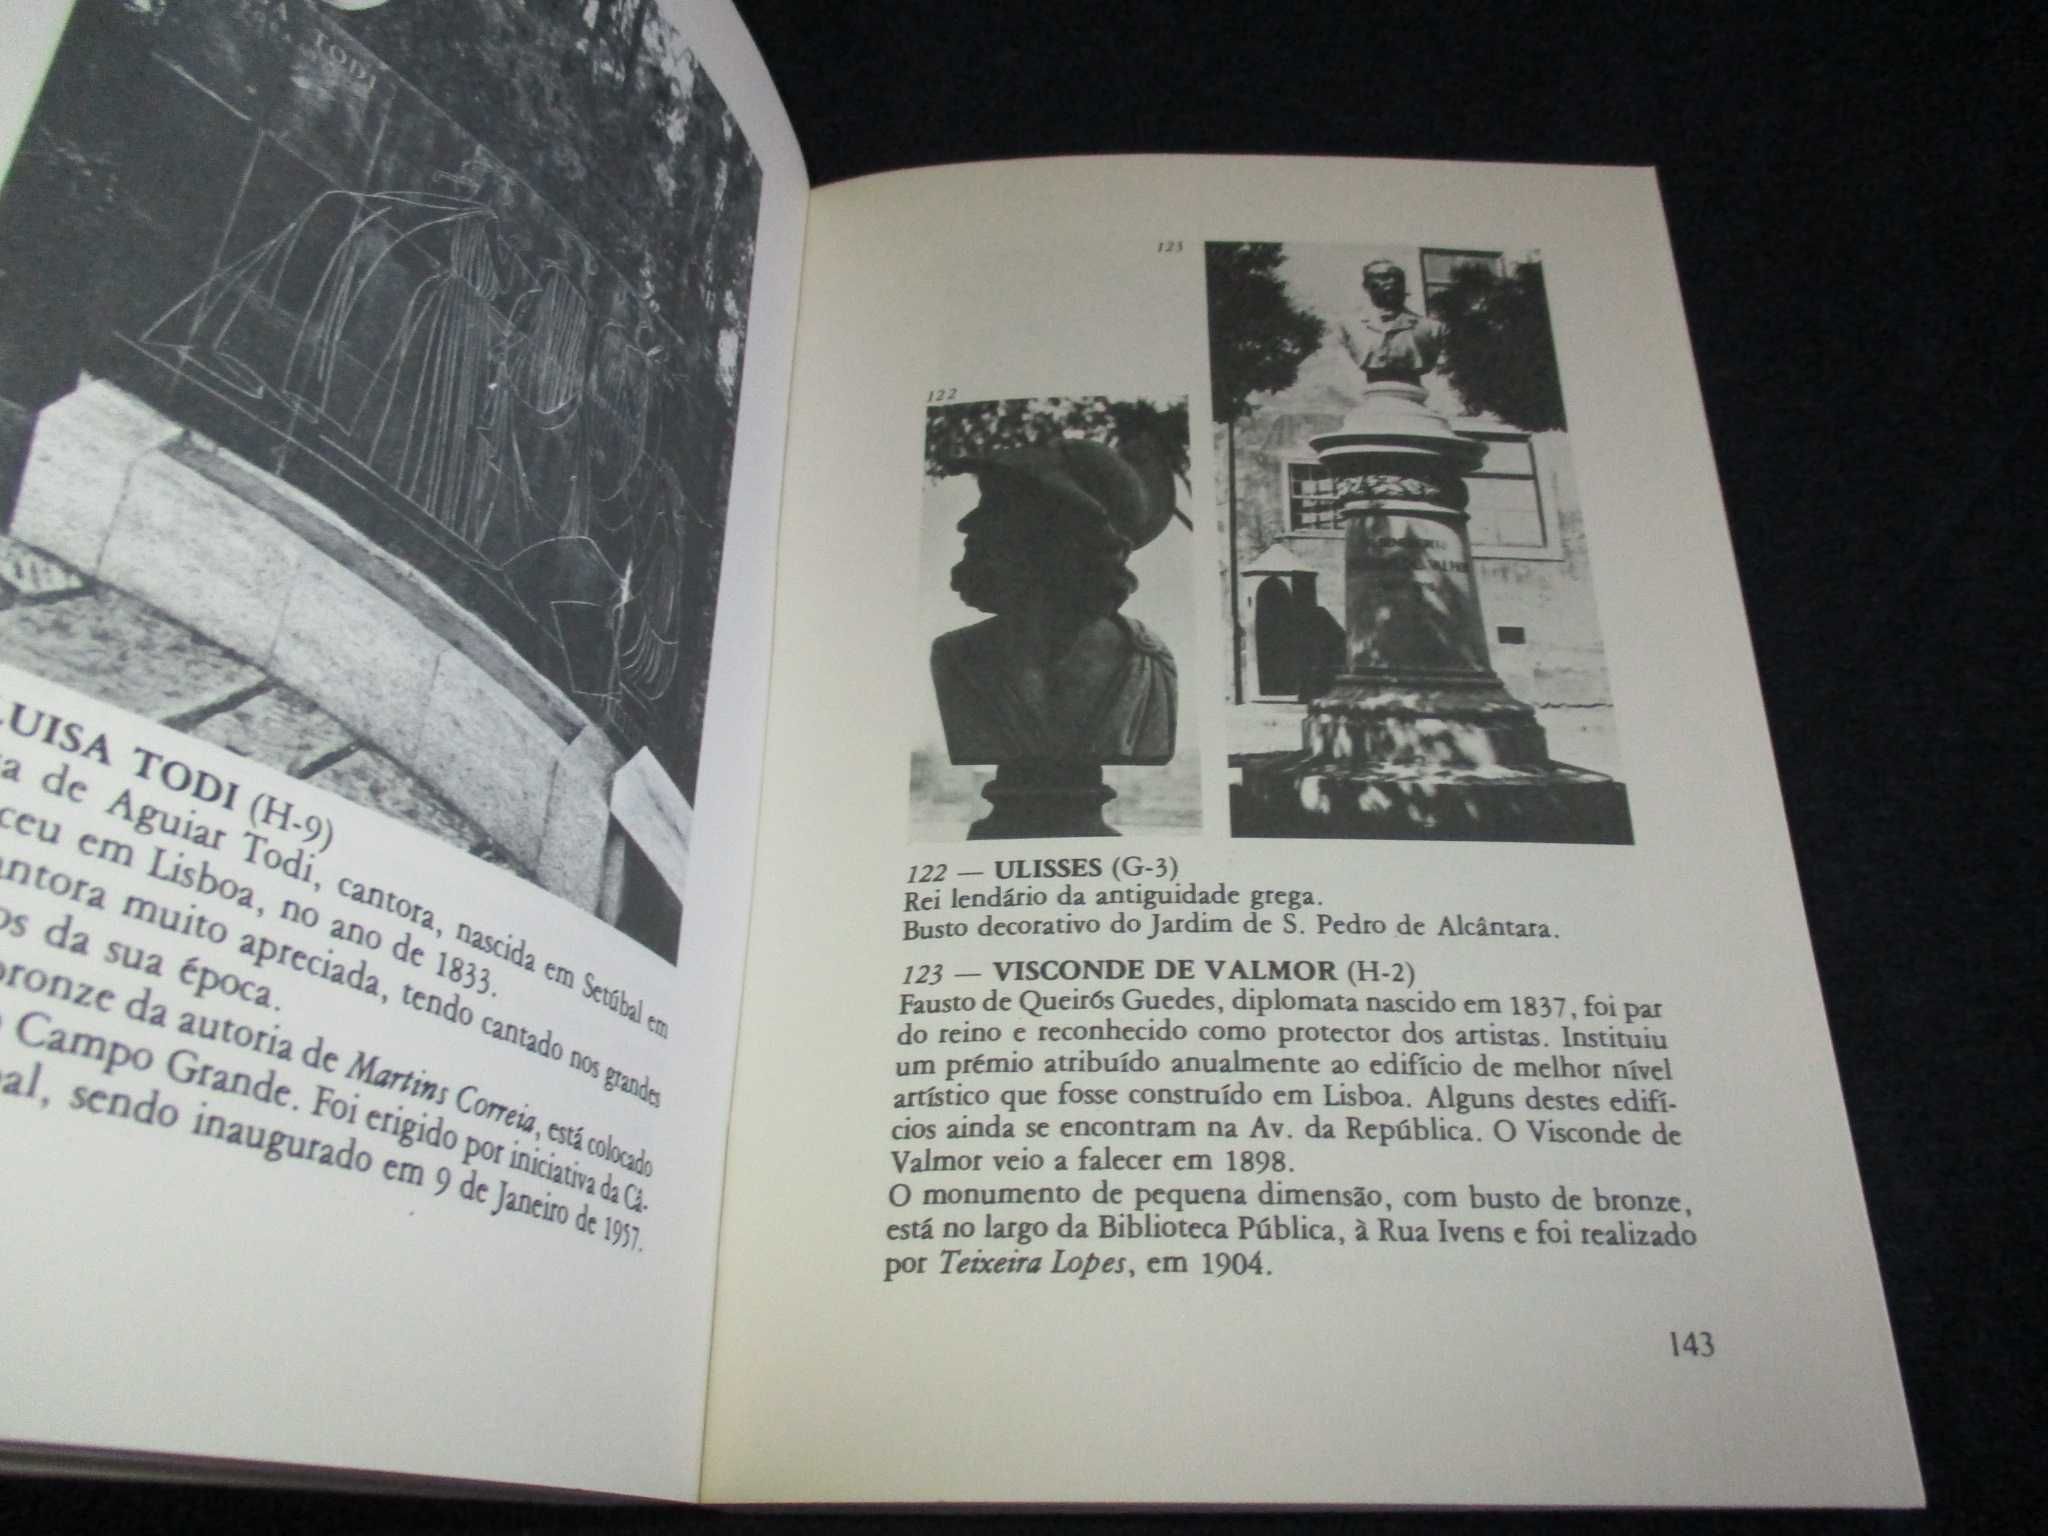 Livro Estatuária de Lisboa 1985